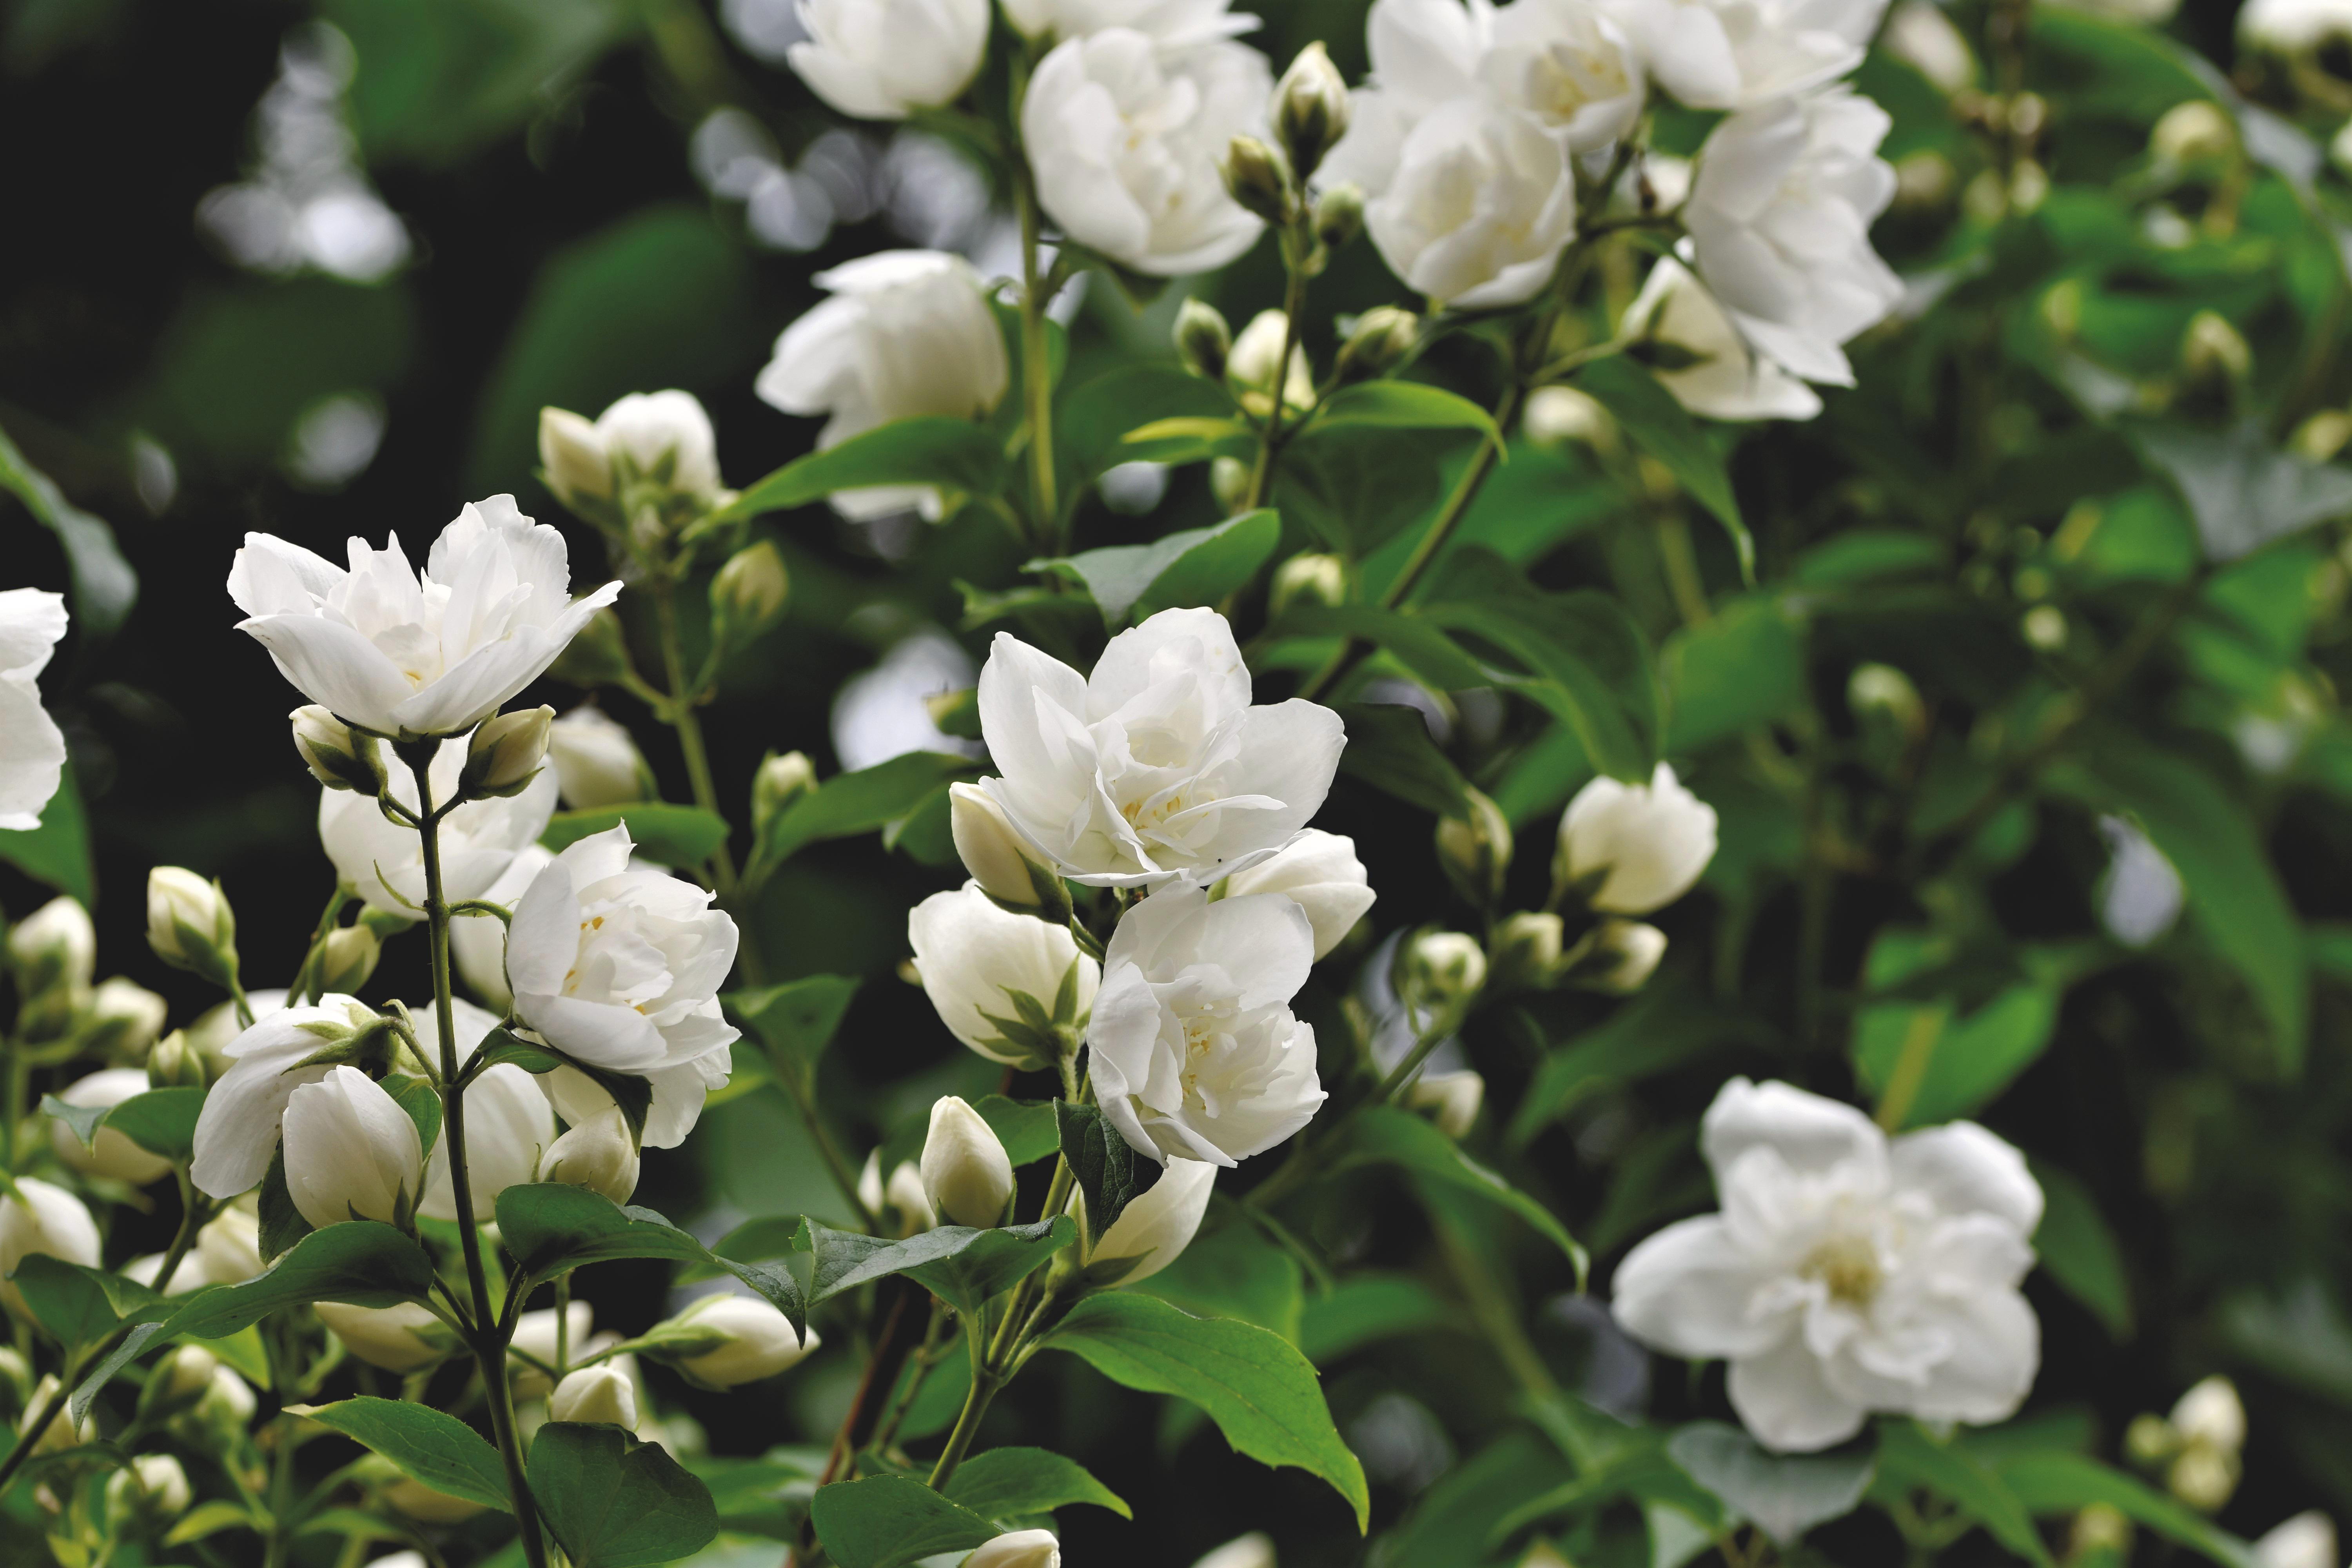 A linda flor de jasmim, que simboliza virtude e pureza